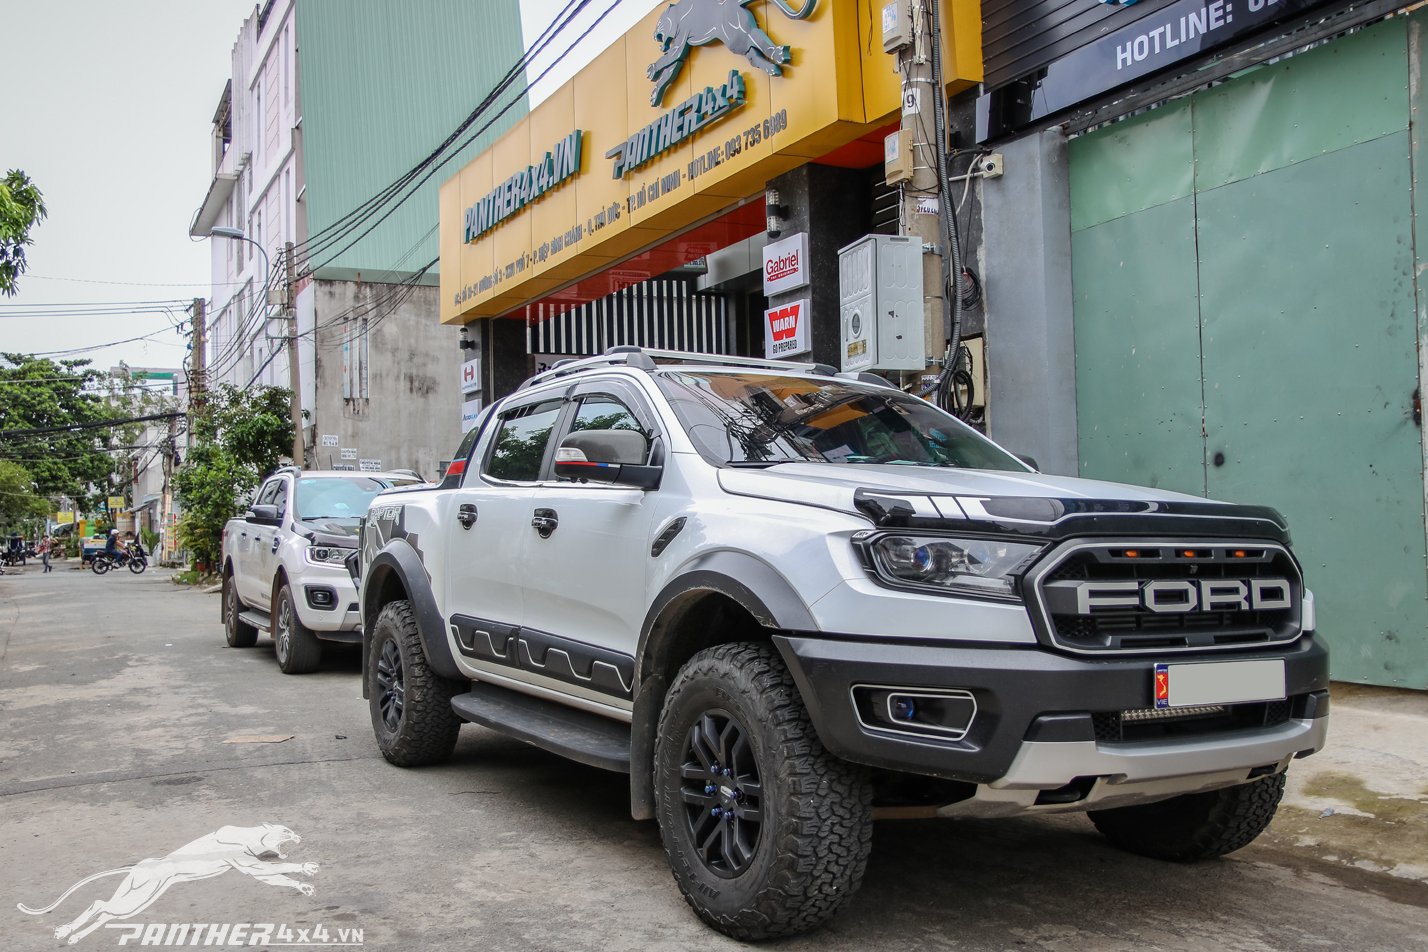 Bệ bước lên xuống cho xe bán tải Ford Ranger hiện nay đang rất hot trên thị trường Việt Nam. Nó đóng một vai trò cực kì quan trọng, vậy điều này là gì mời các bạn đọc bài viết nhé!